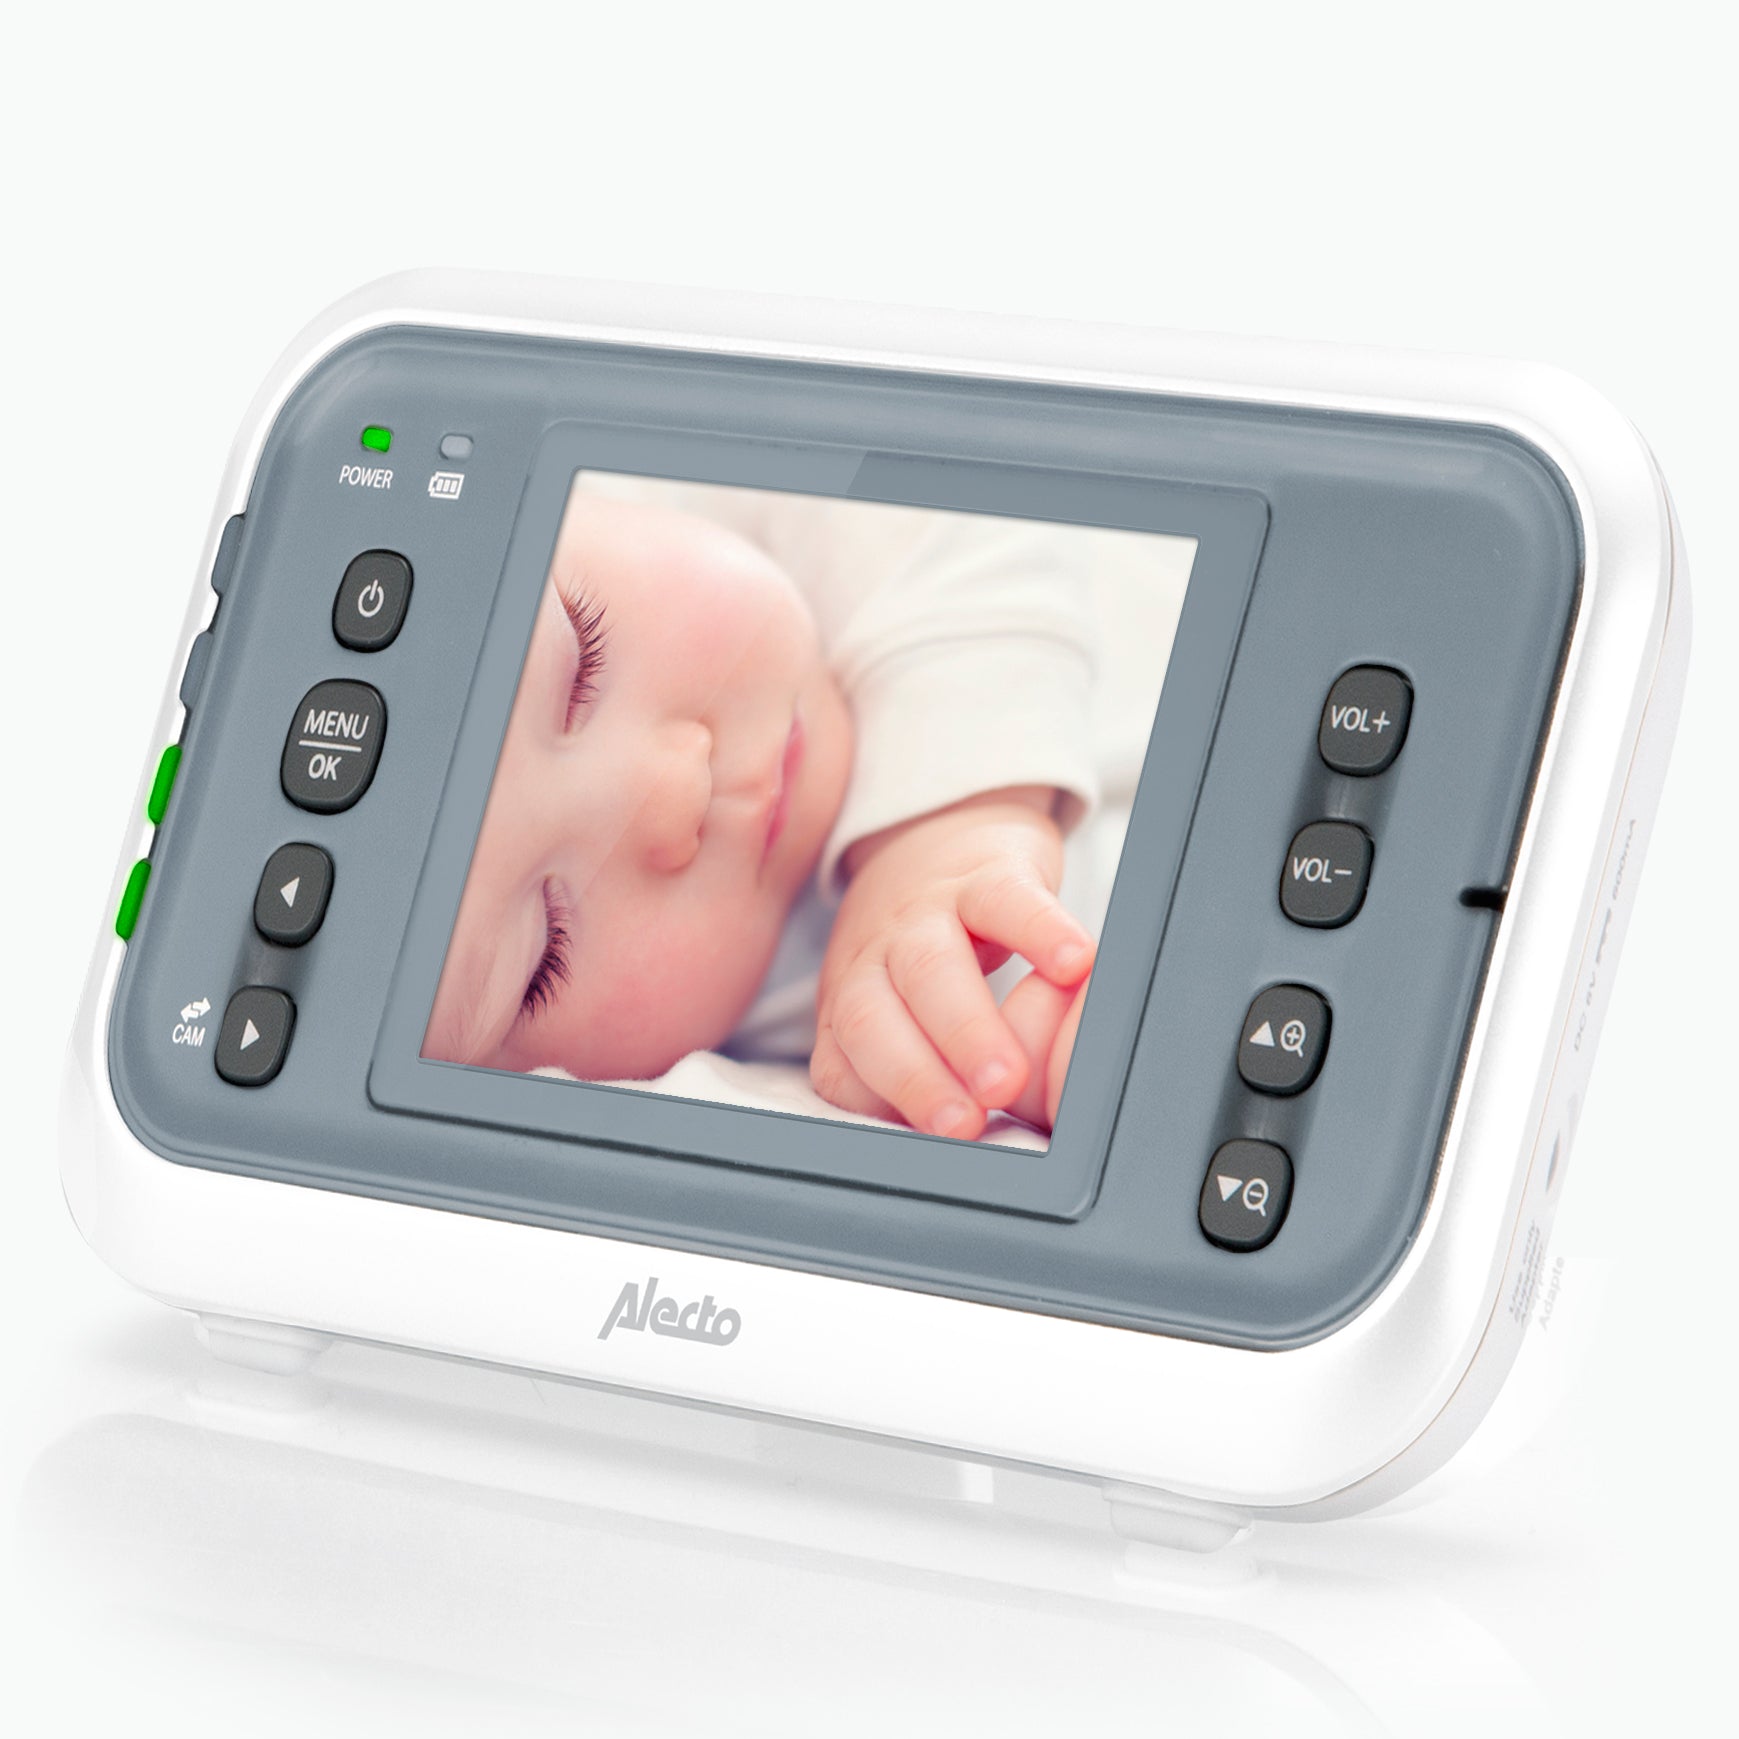 Alecto Moniteur bébé avec caméra DVM-64, écran couleur 2,4 pouces